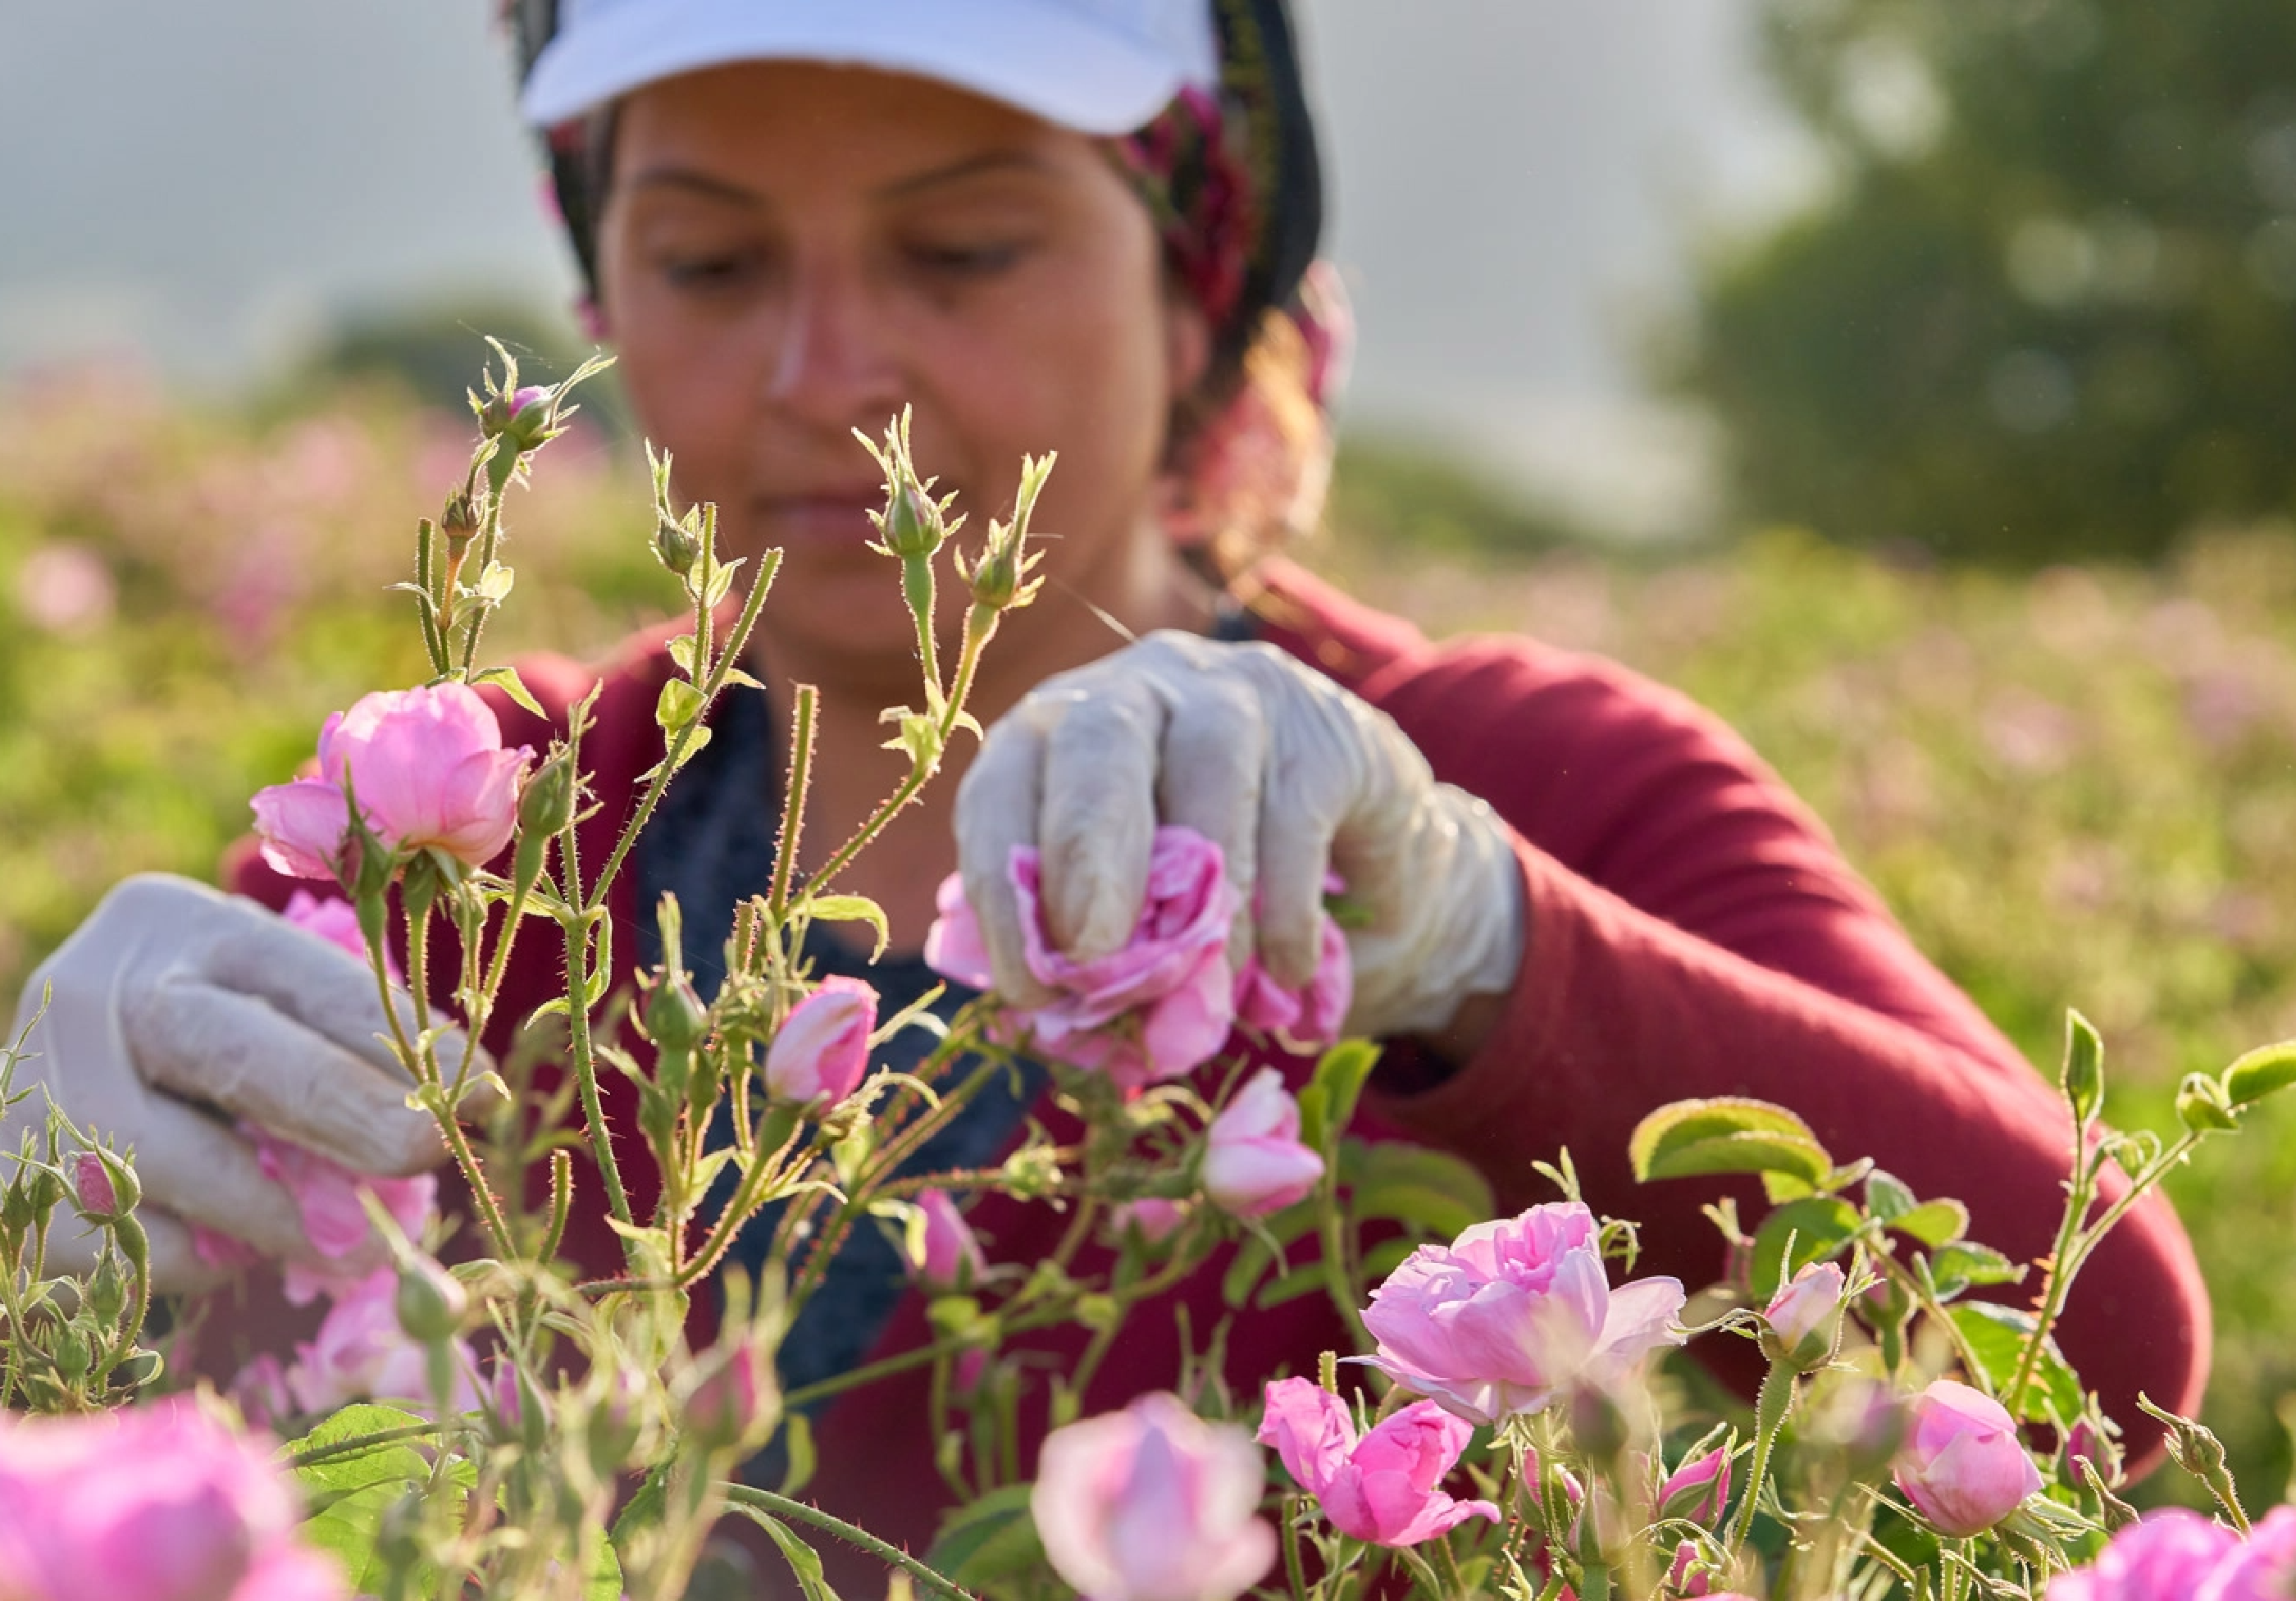 Woman picking flowers in a field.